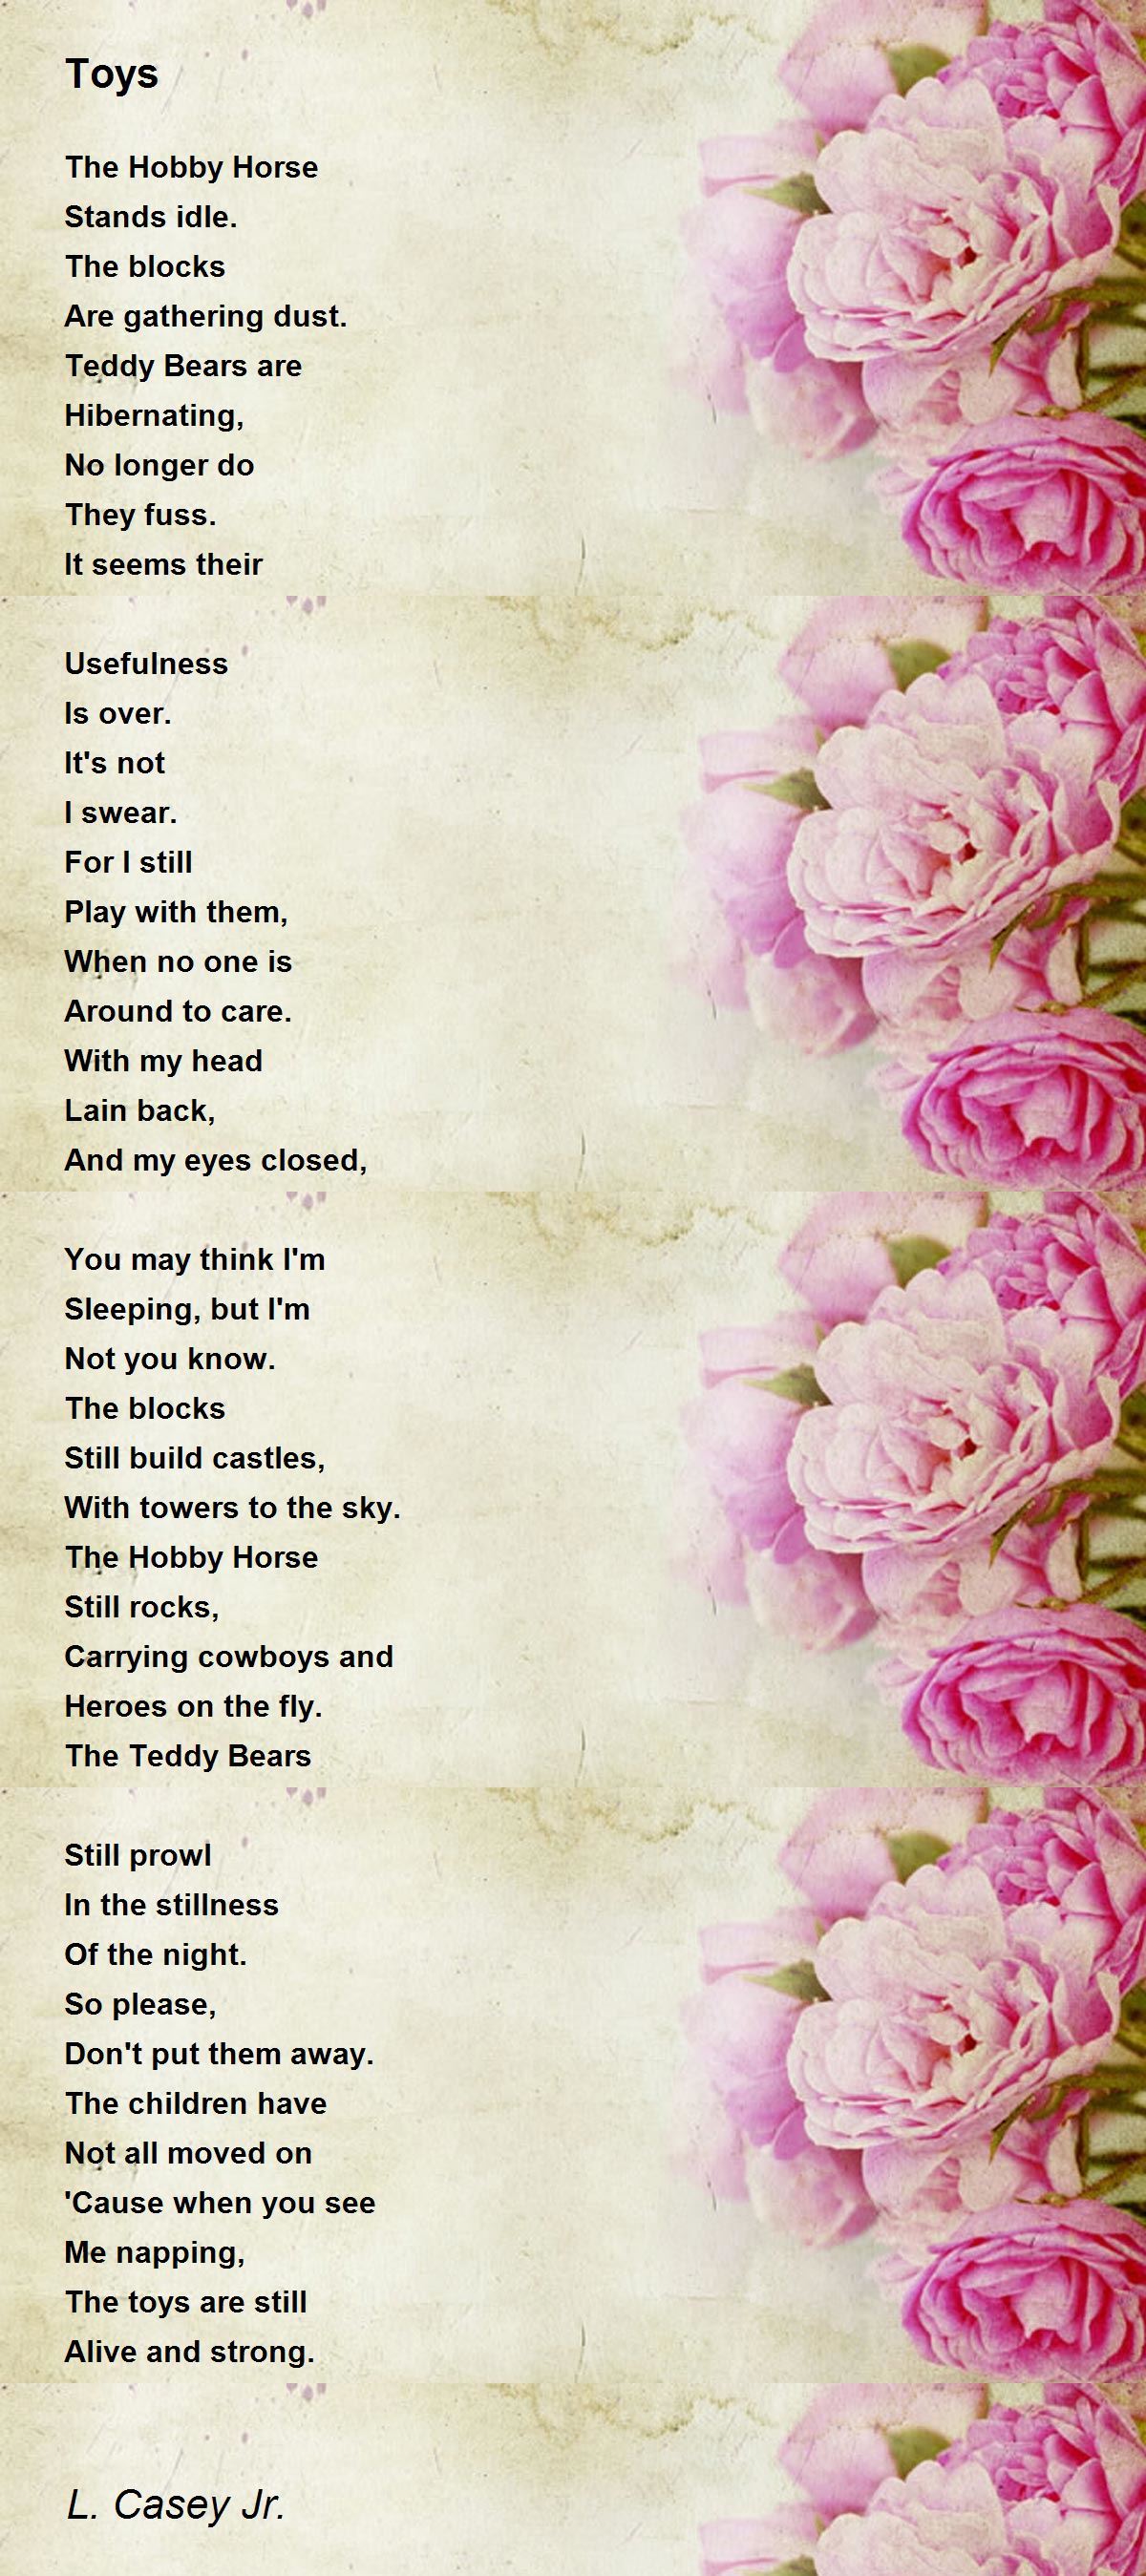 Toys - Toys Poem by L. Casey Jr.